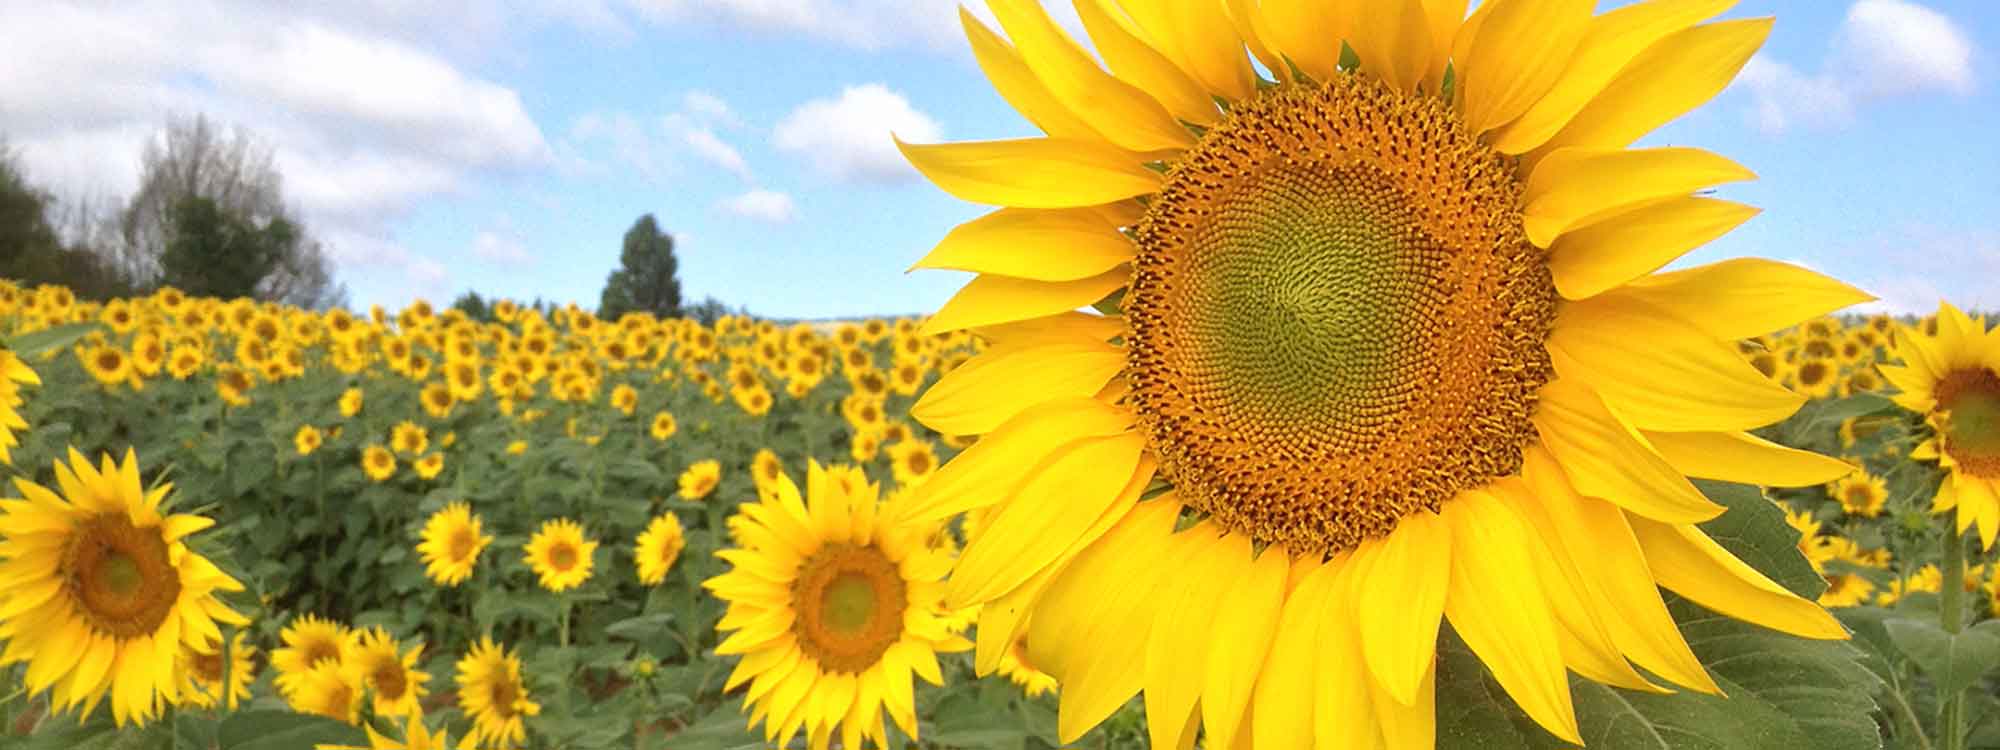 2020_Top-Slideshow-Sunflowers